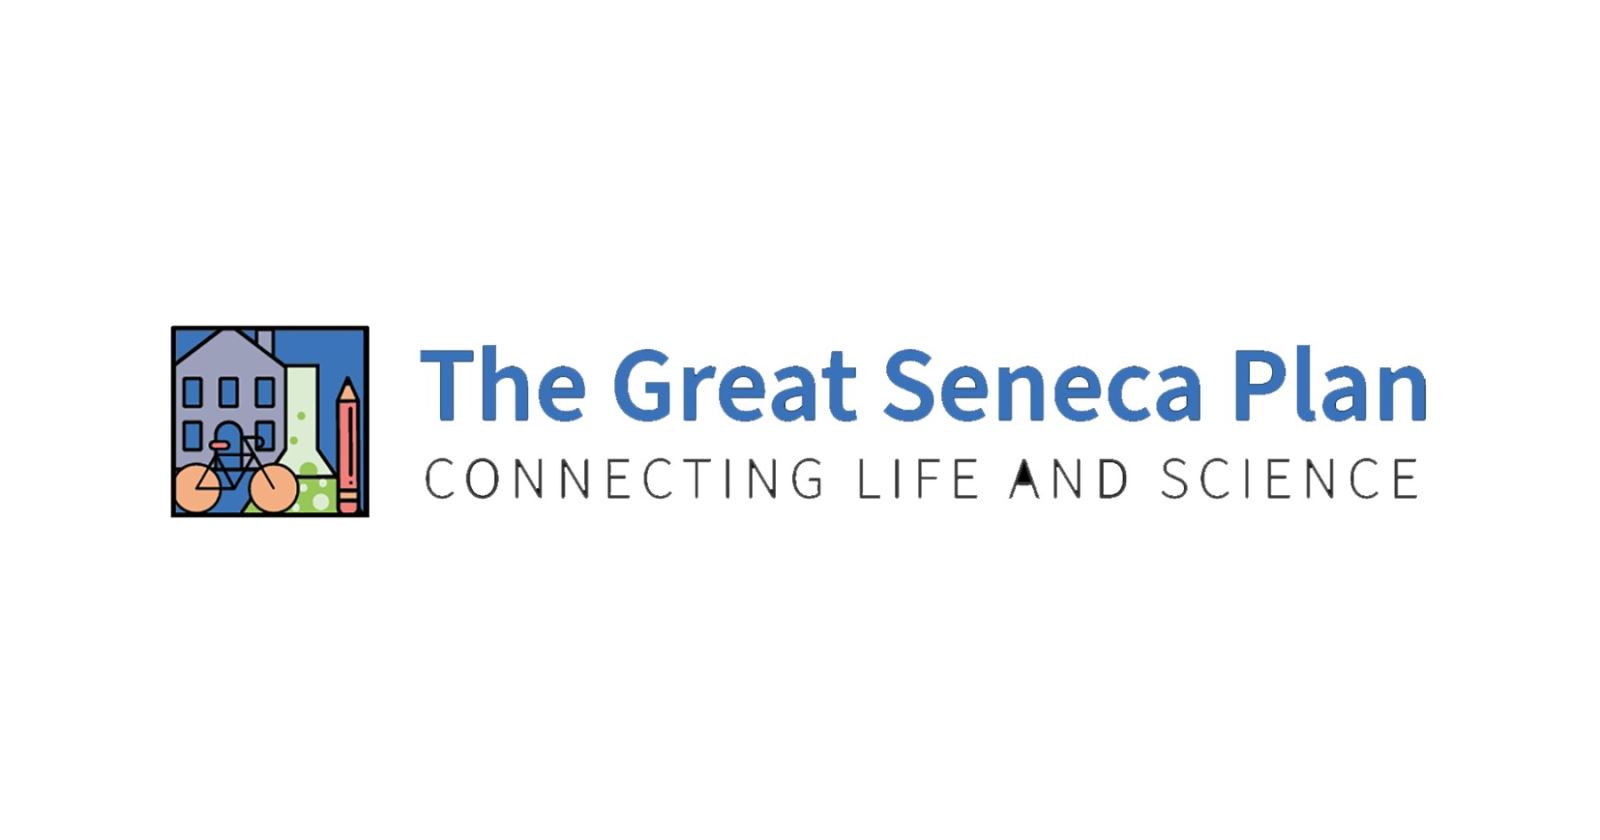 El gráfico dice “el Plan Great Seneca:Conectando la Vida y la Ciencia” en inglés“The Great Seneca Plan: Connecting Life and Science”.